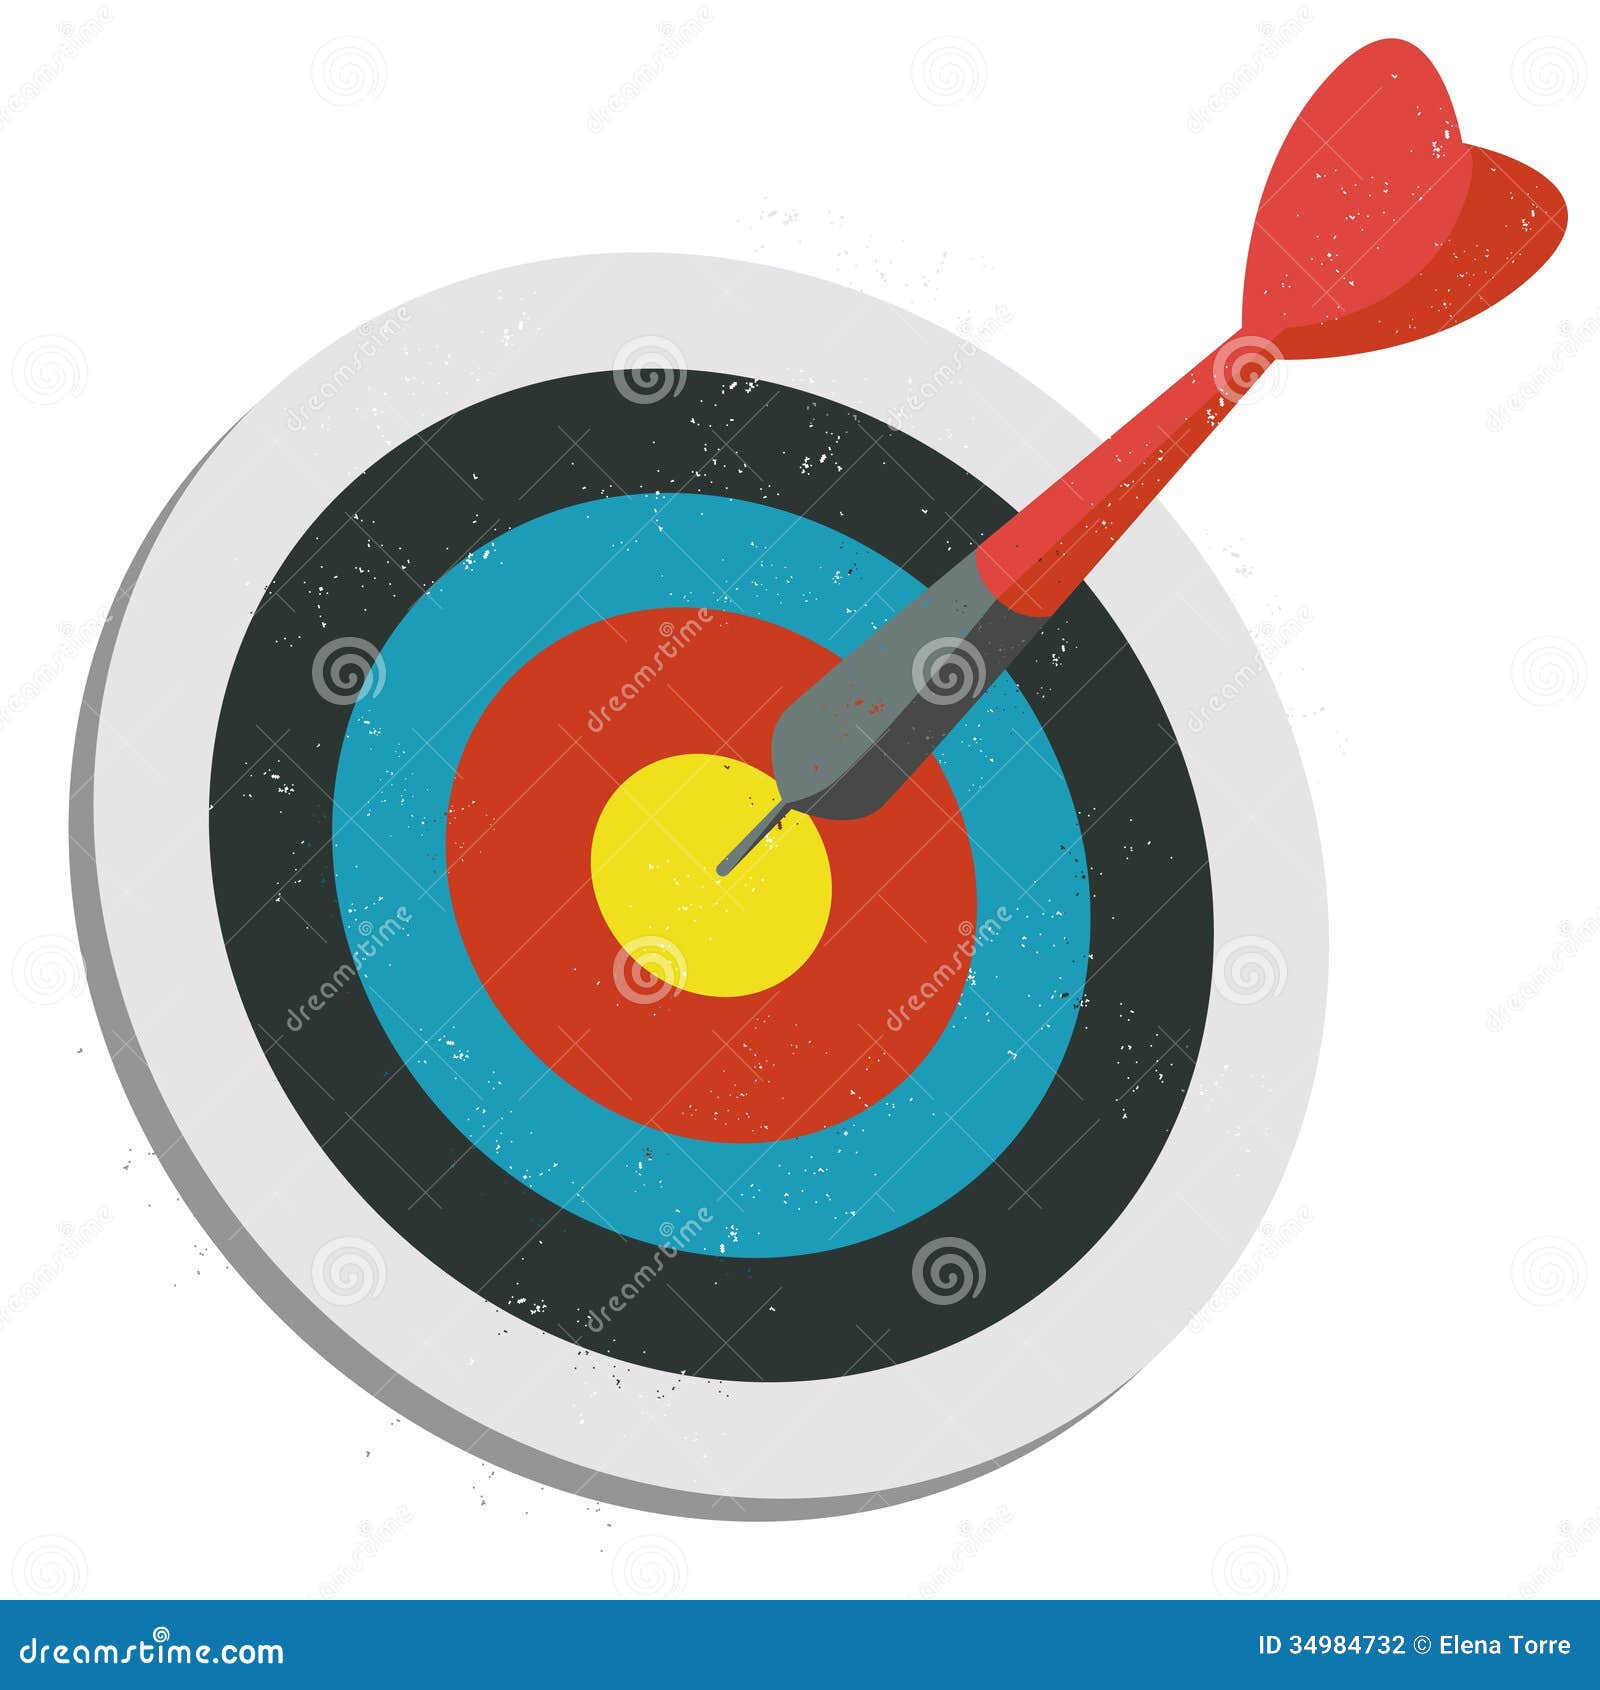 red dart hitting target